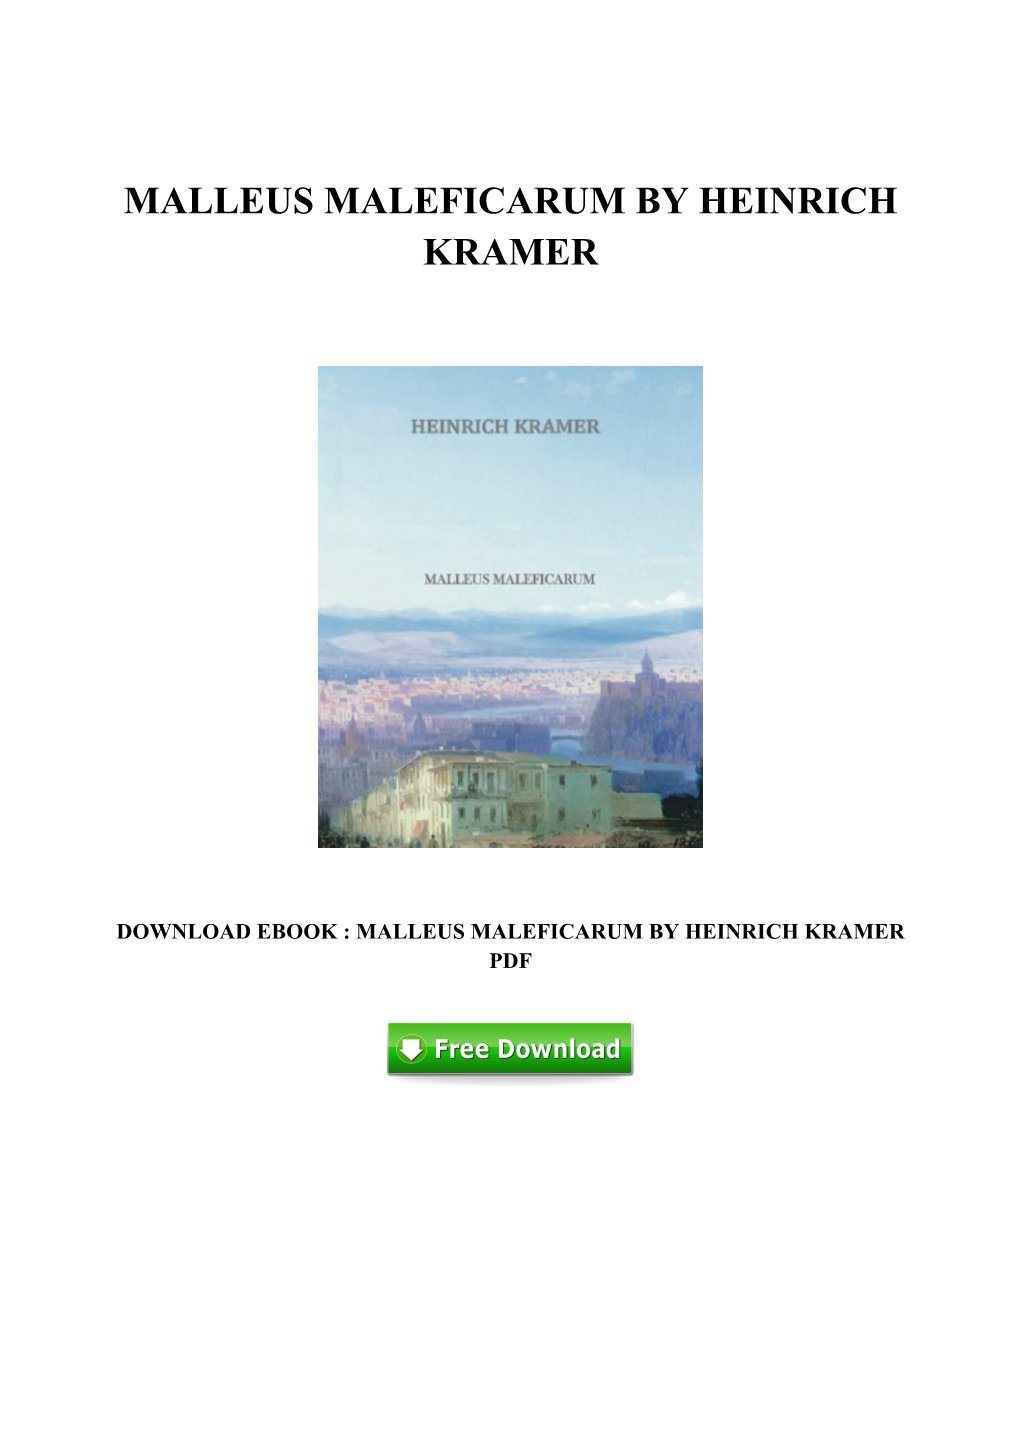 PDF Ebook Malleus Maleficarum by Heinrich Kramer